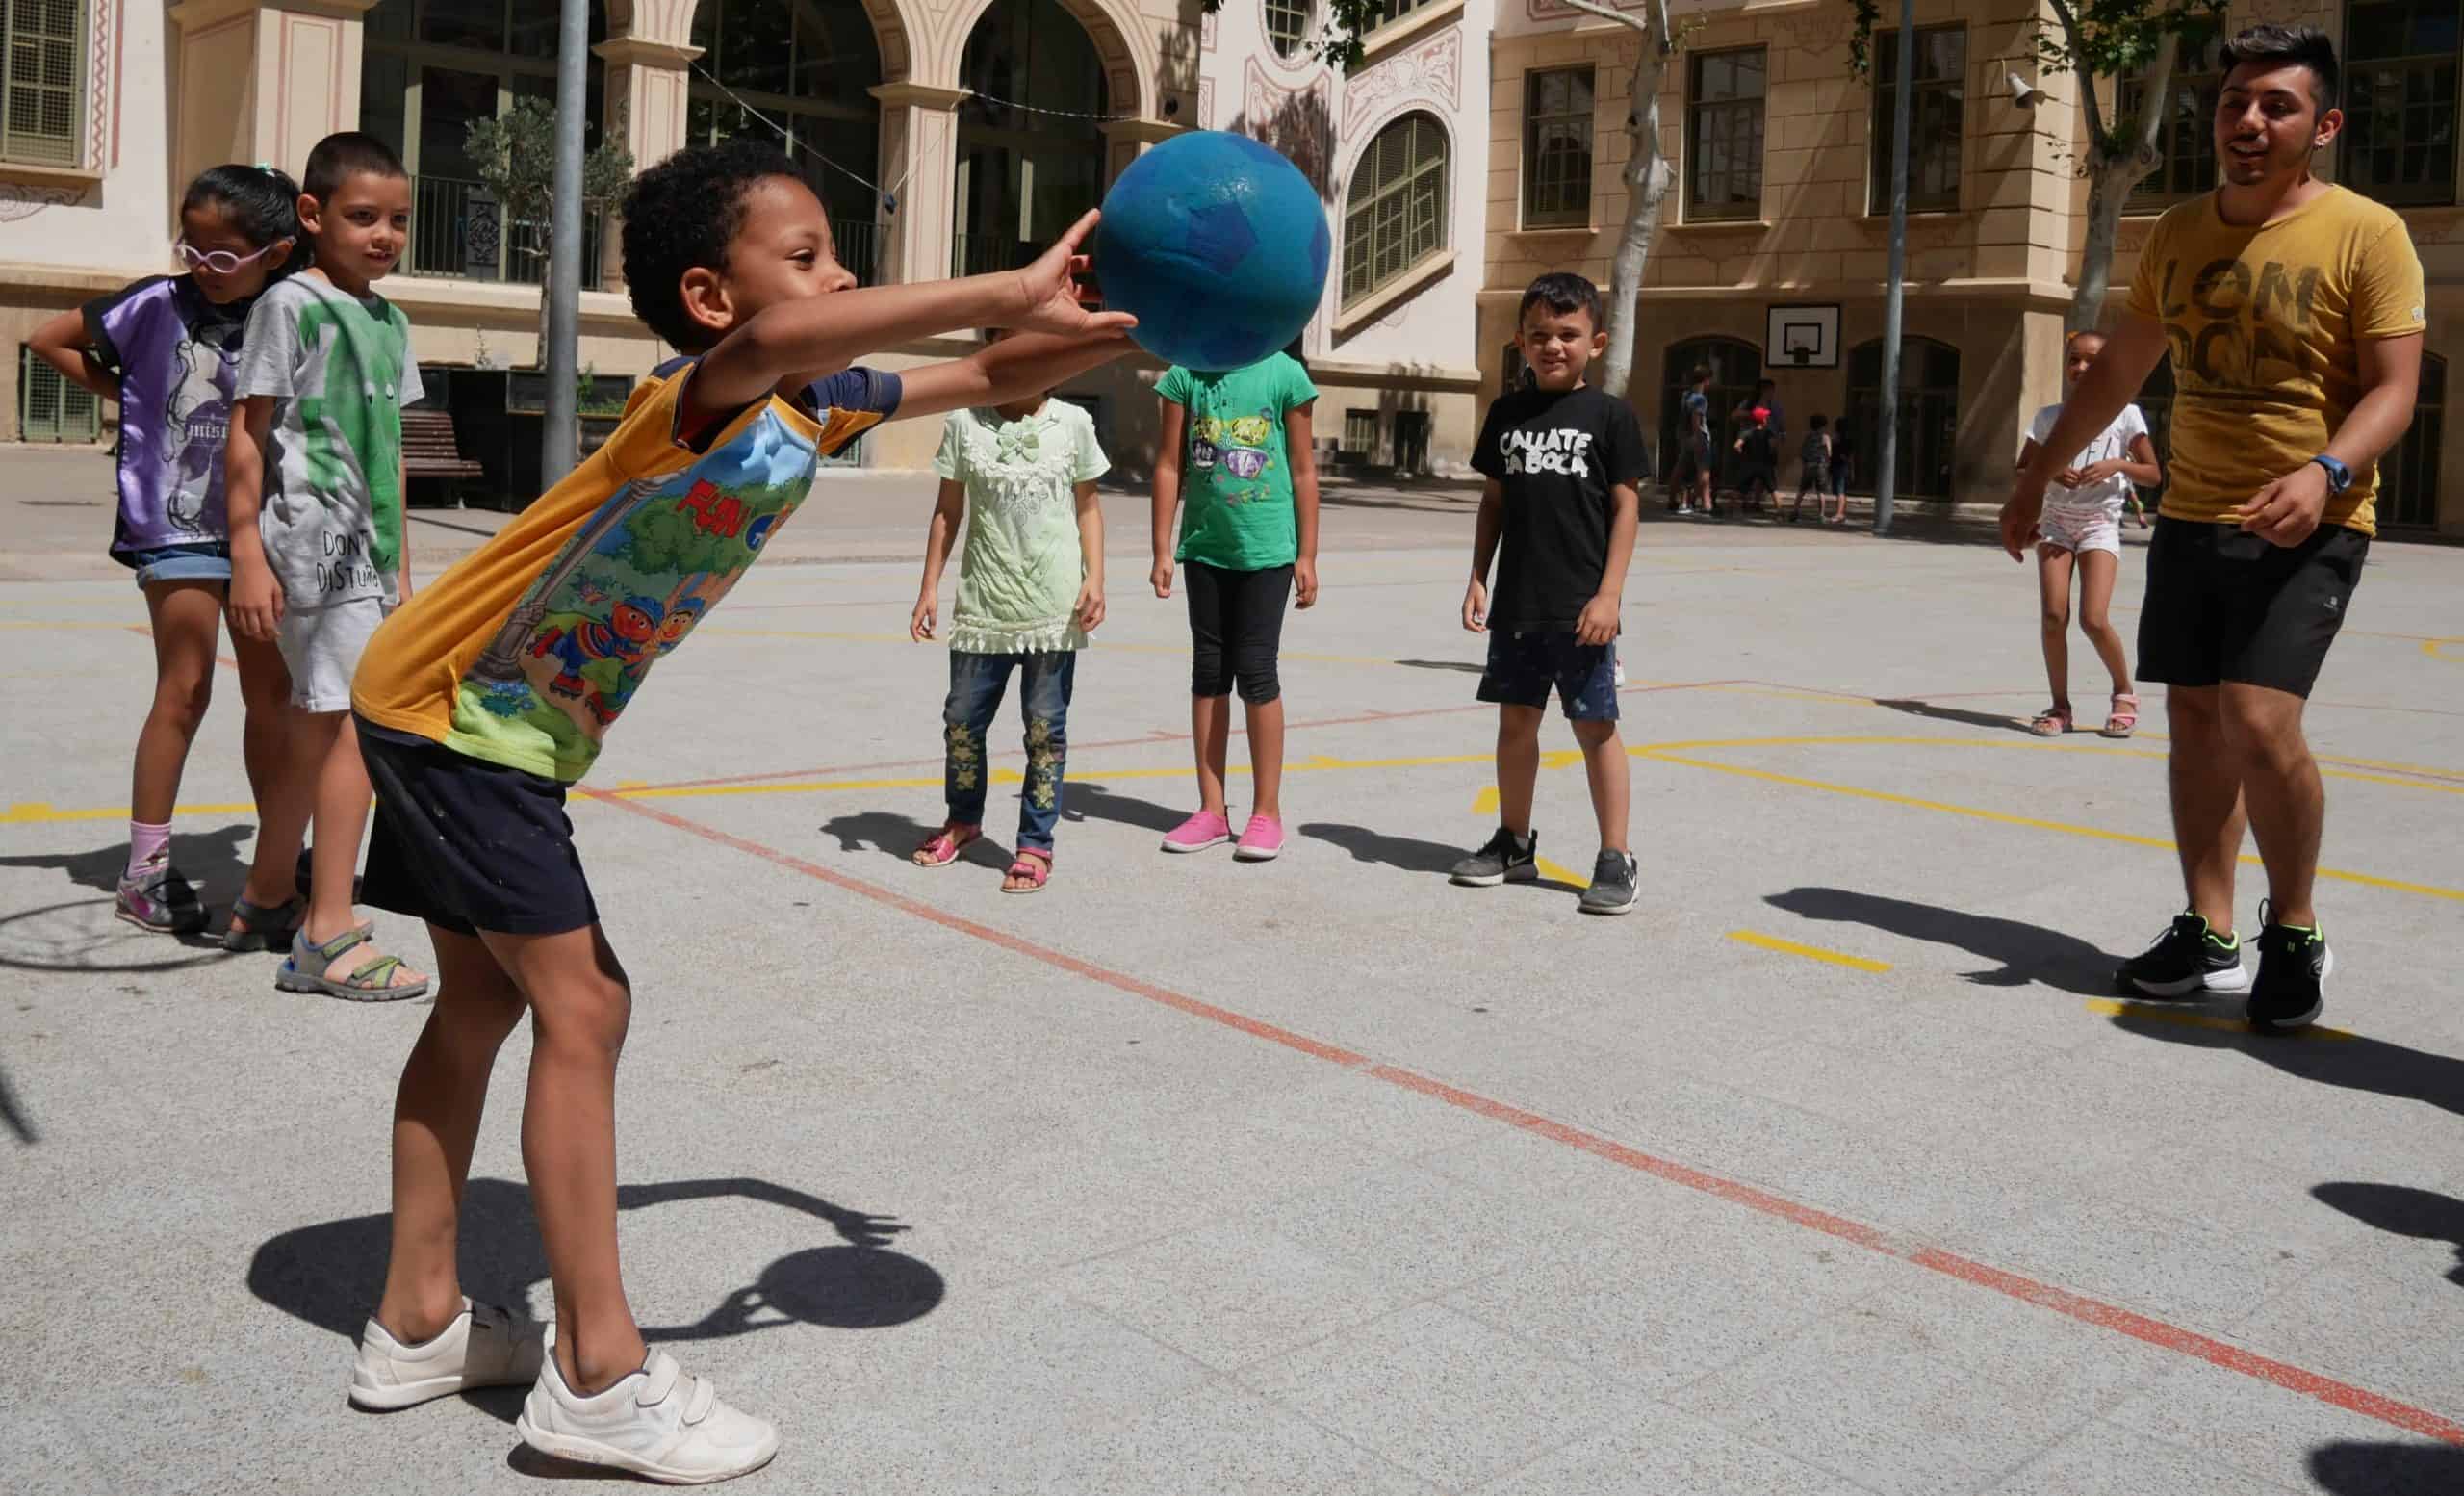 Nens i nenes jugant amb una pilota.